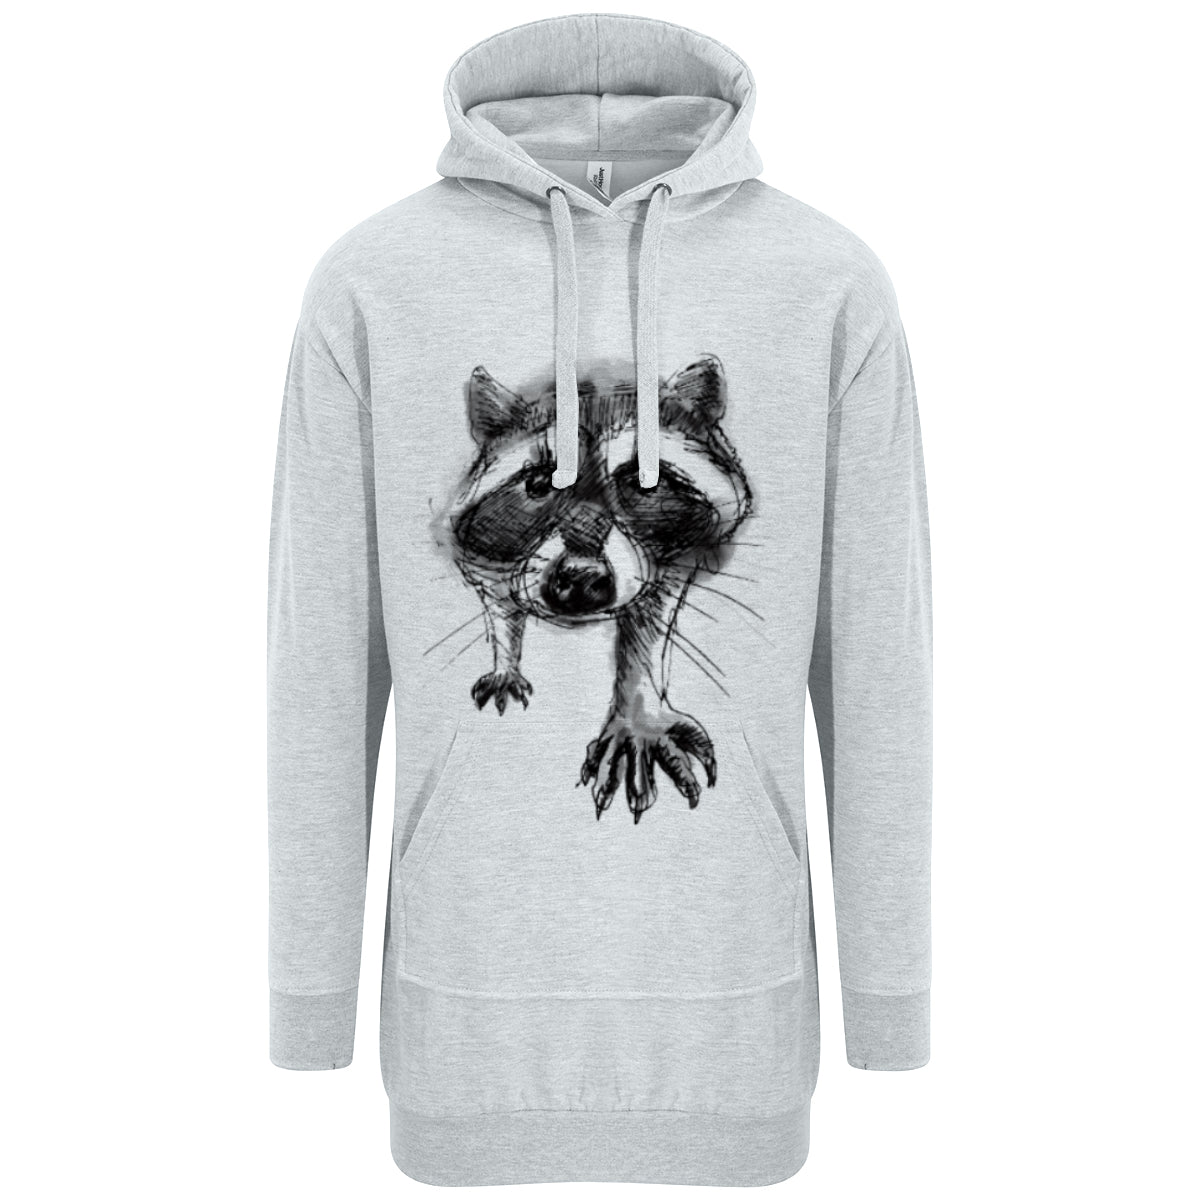 Curious racoon hoodie dress